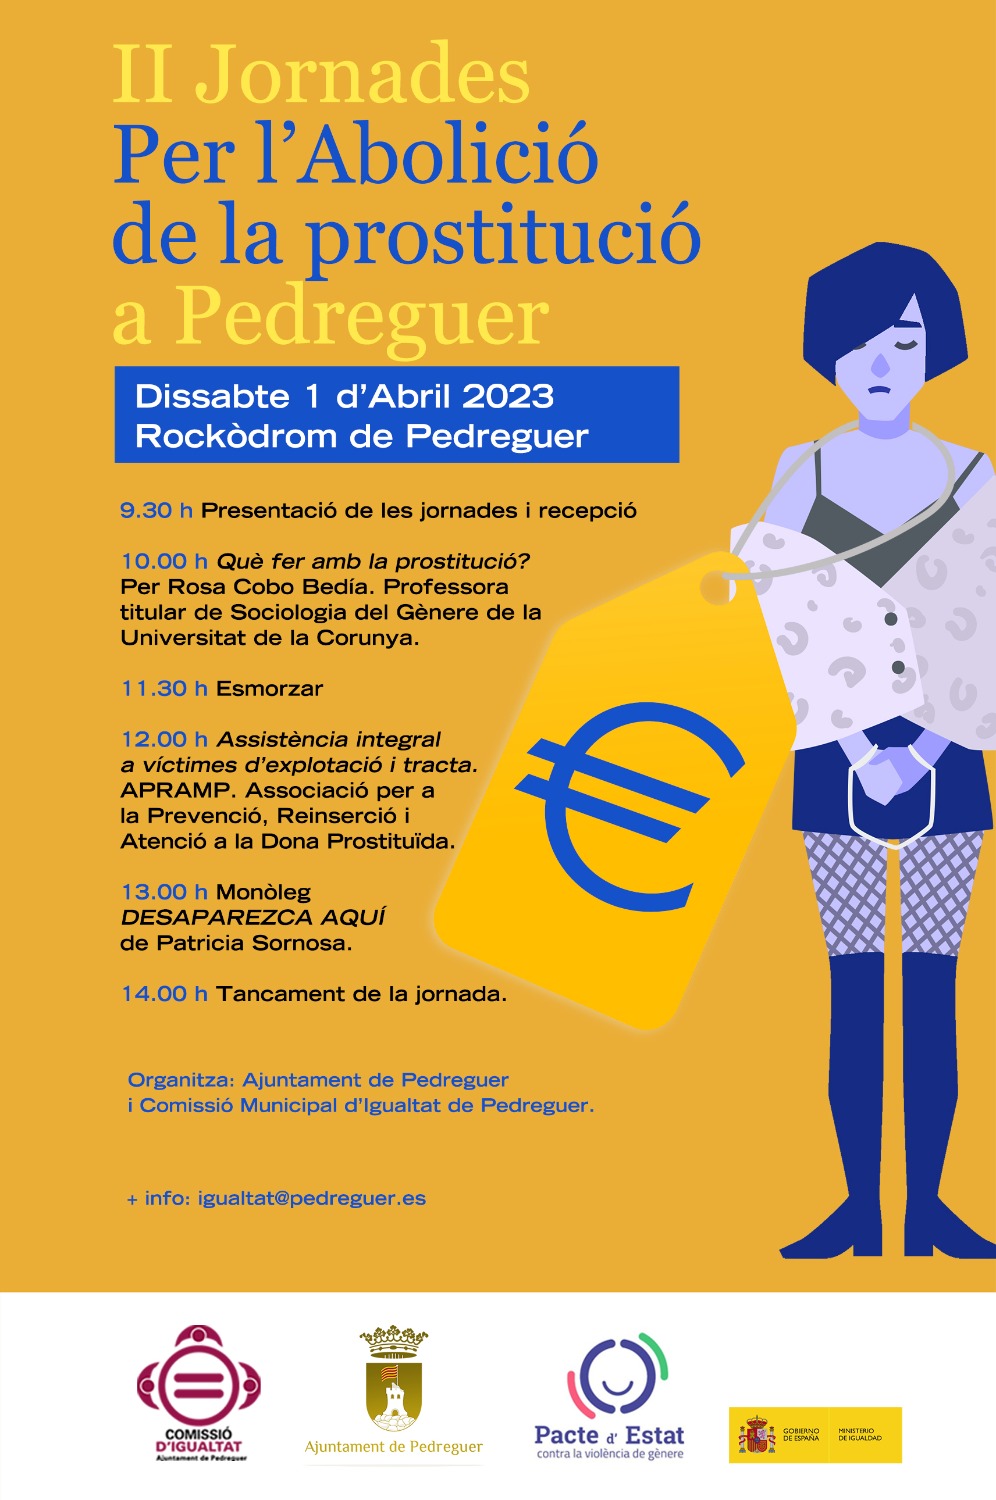 El dia 1 d’abril tindran lloc les II Jornades Per l’Abolició de la prostitució a Pedreguer.